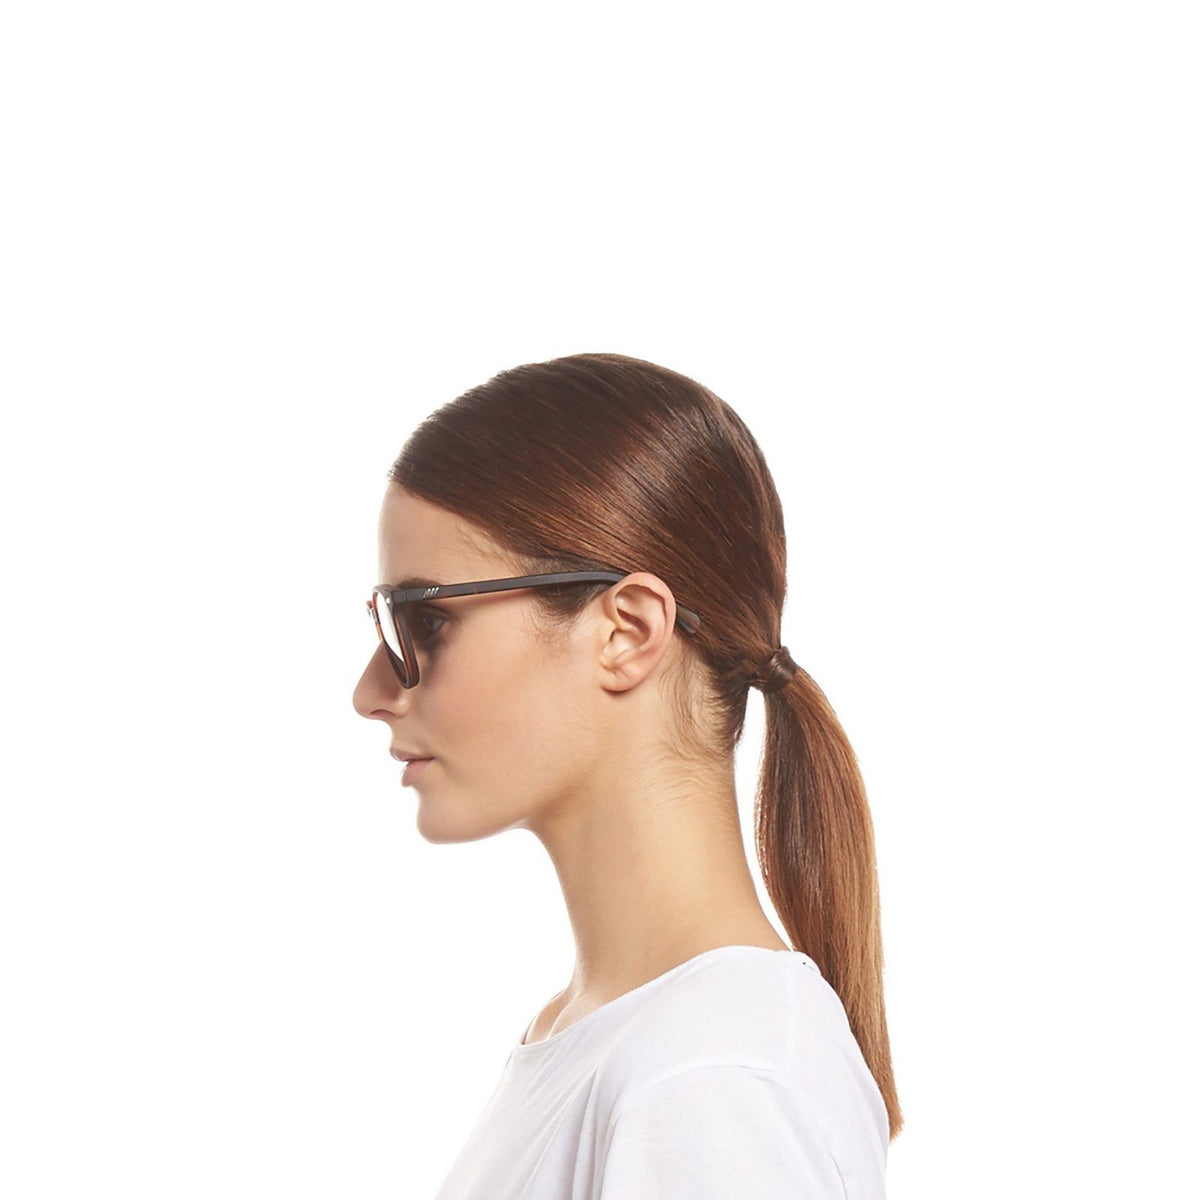 Le Specs - Band Wagon - Matte Tort Unisex Sunglasses